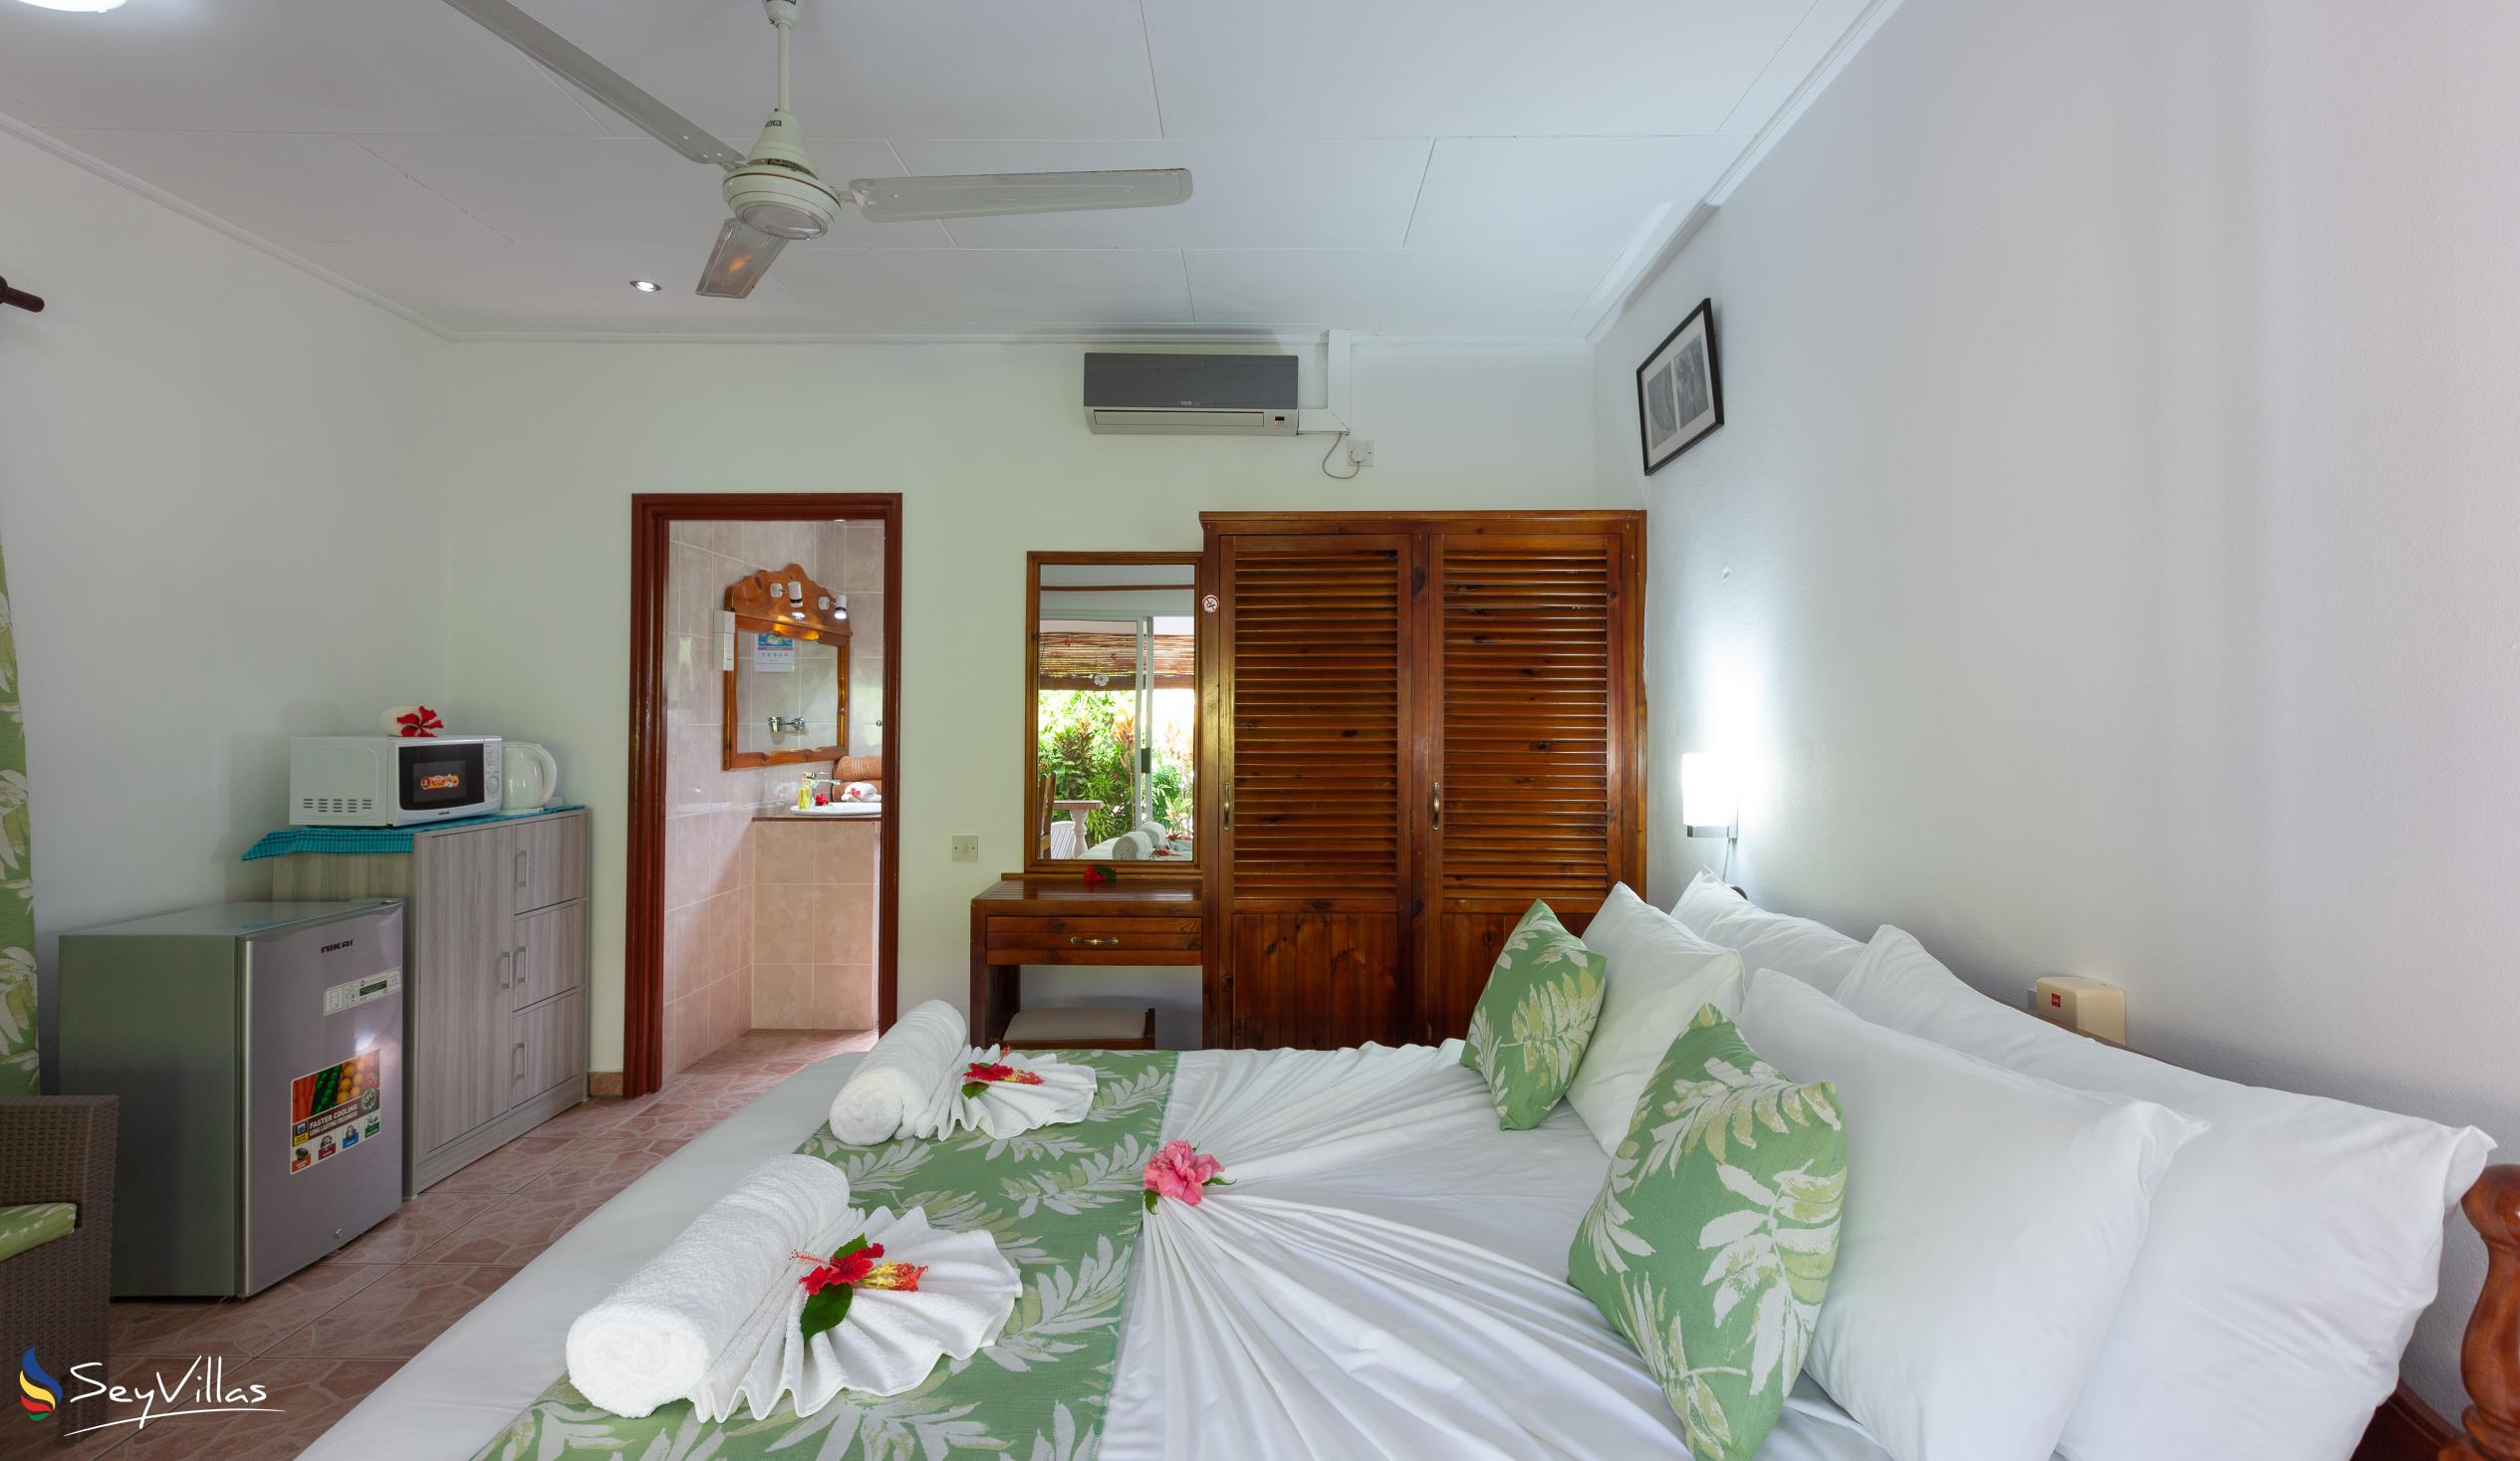 Foto 54: Pension Hibiscus - Maison Eliza - Chambre Standard - La Digue (Seychelles)